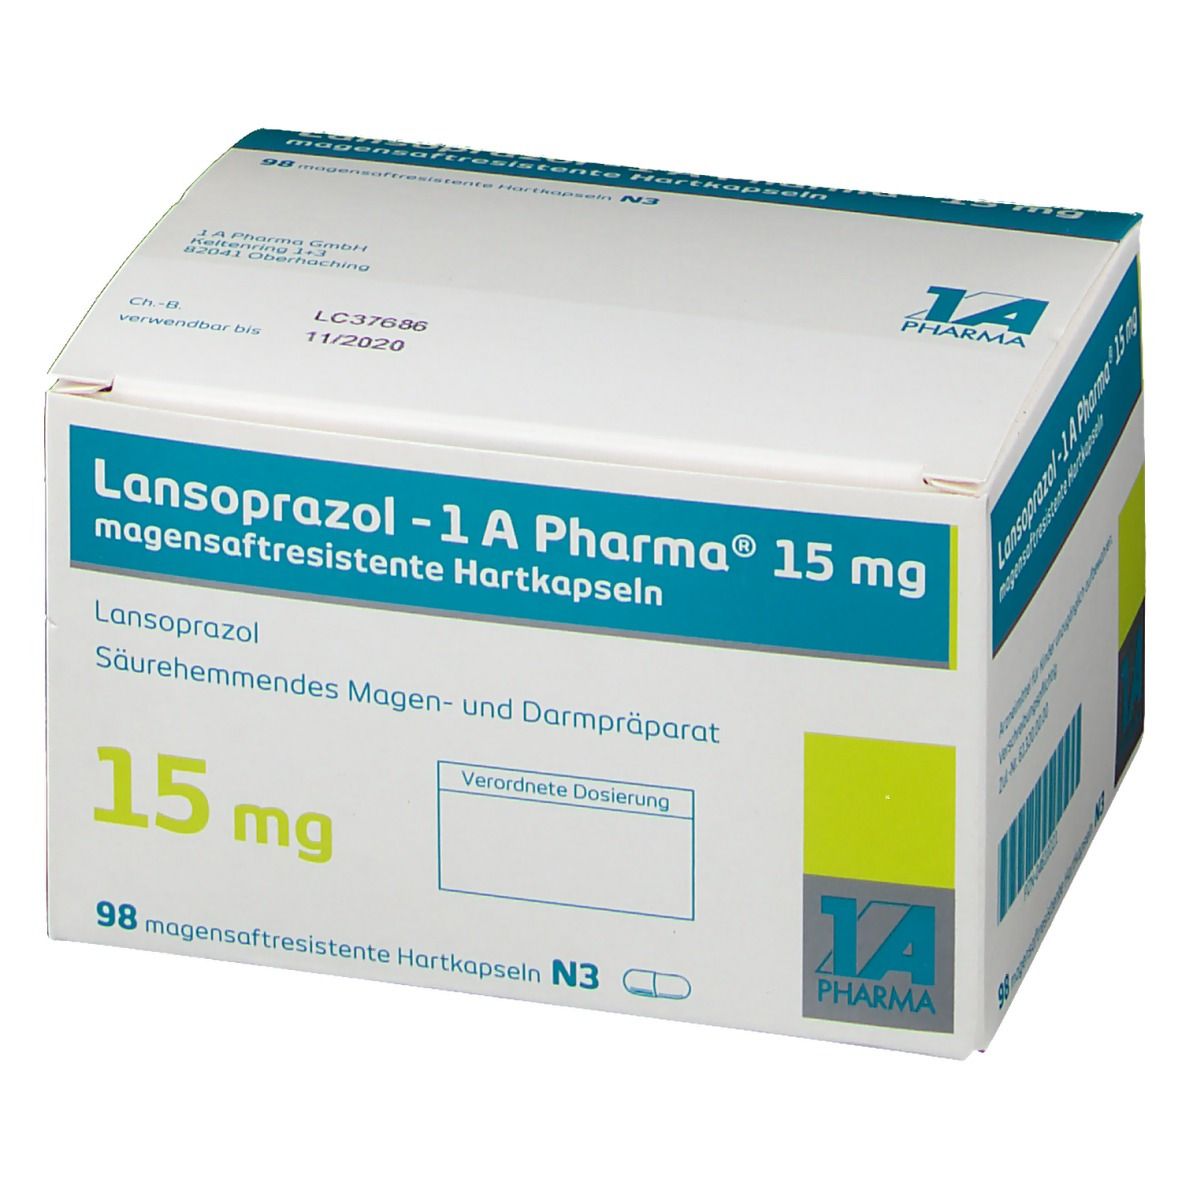 Lansoprazol 1 A Pharma® 15 mg 56 St - shop-apotheke.com